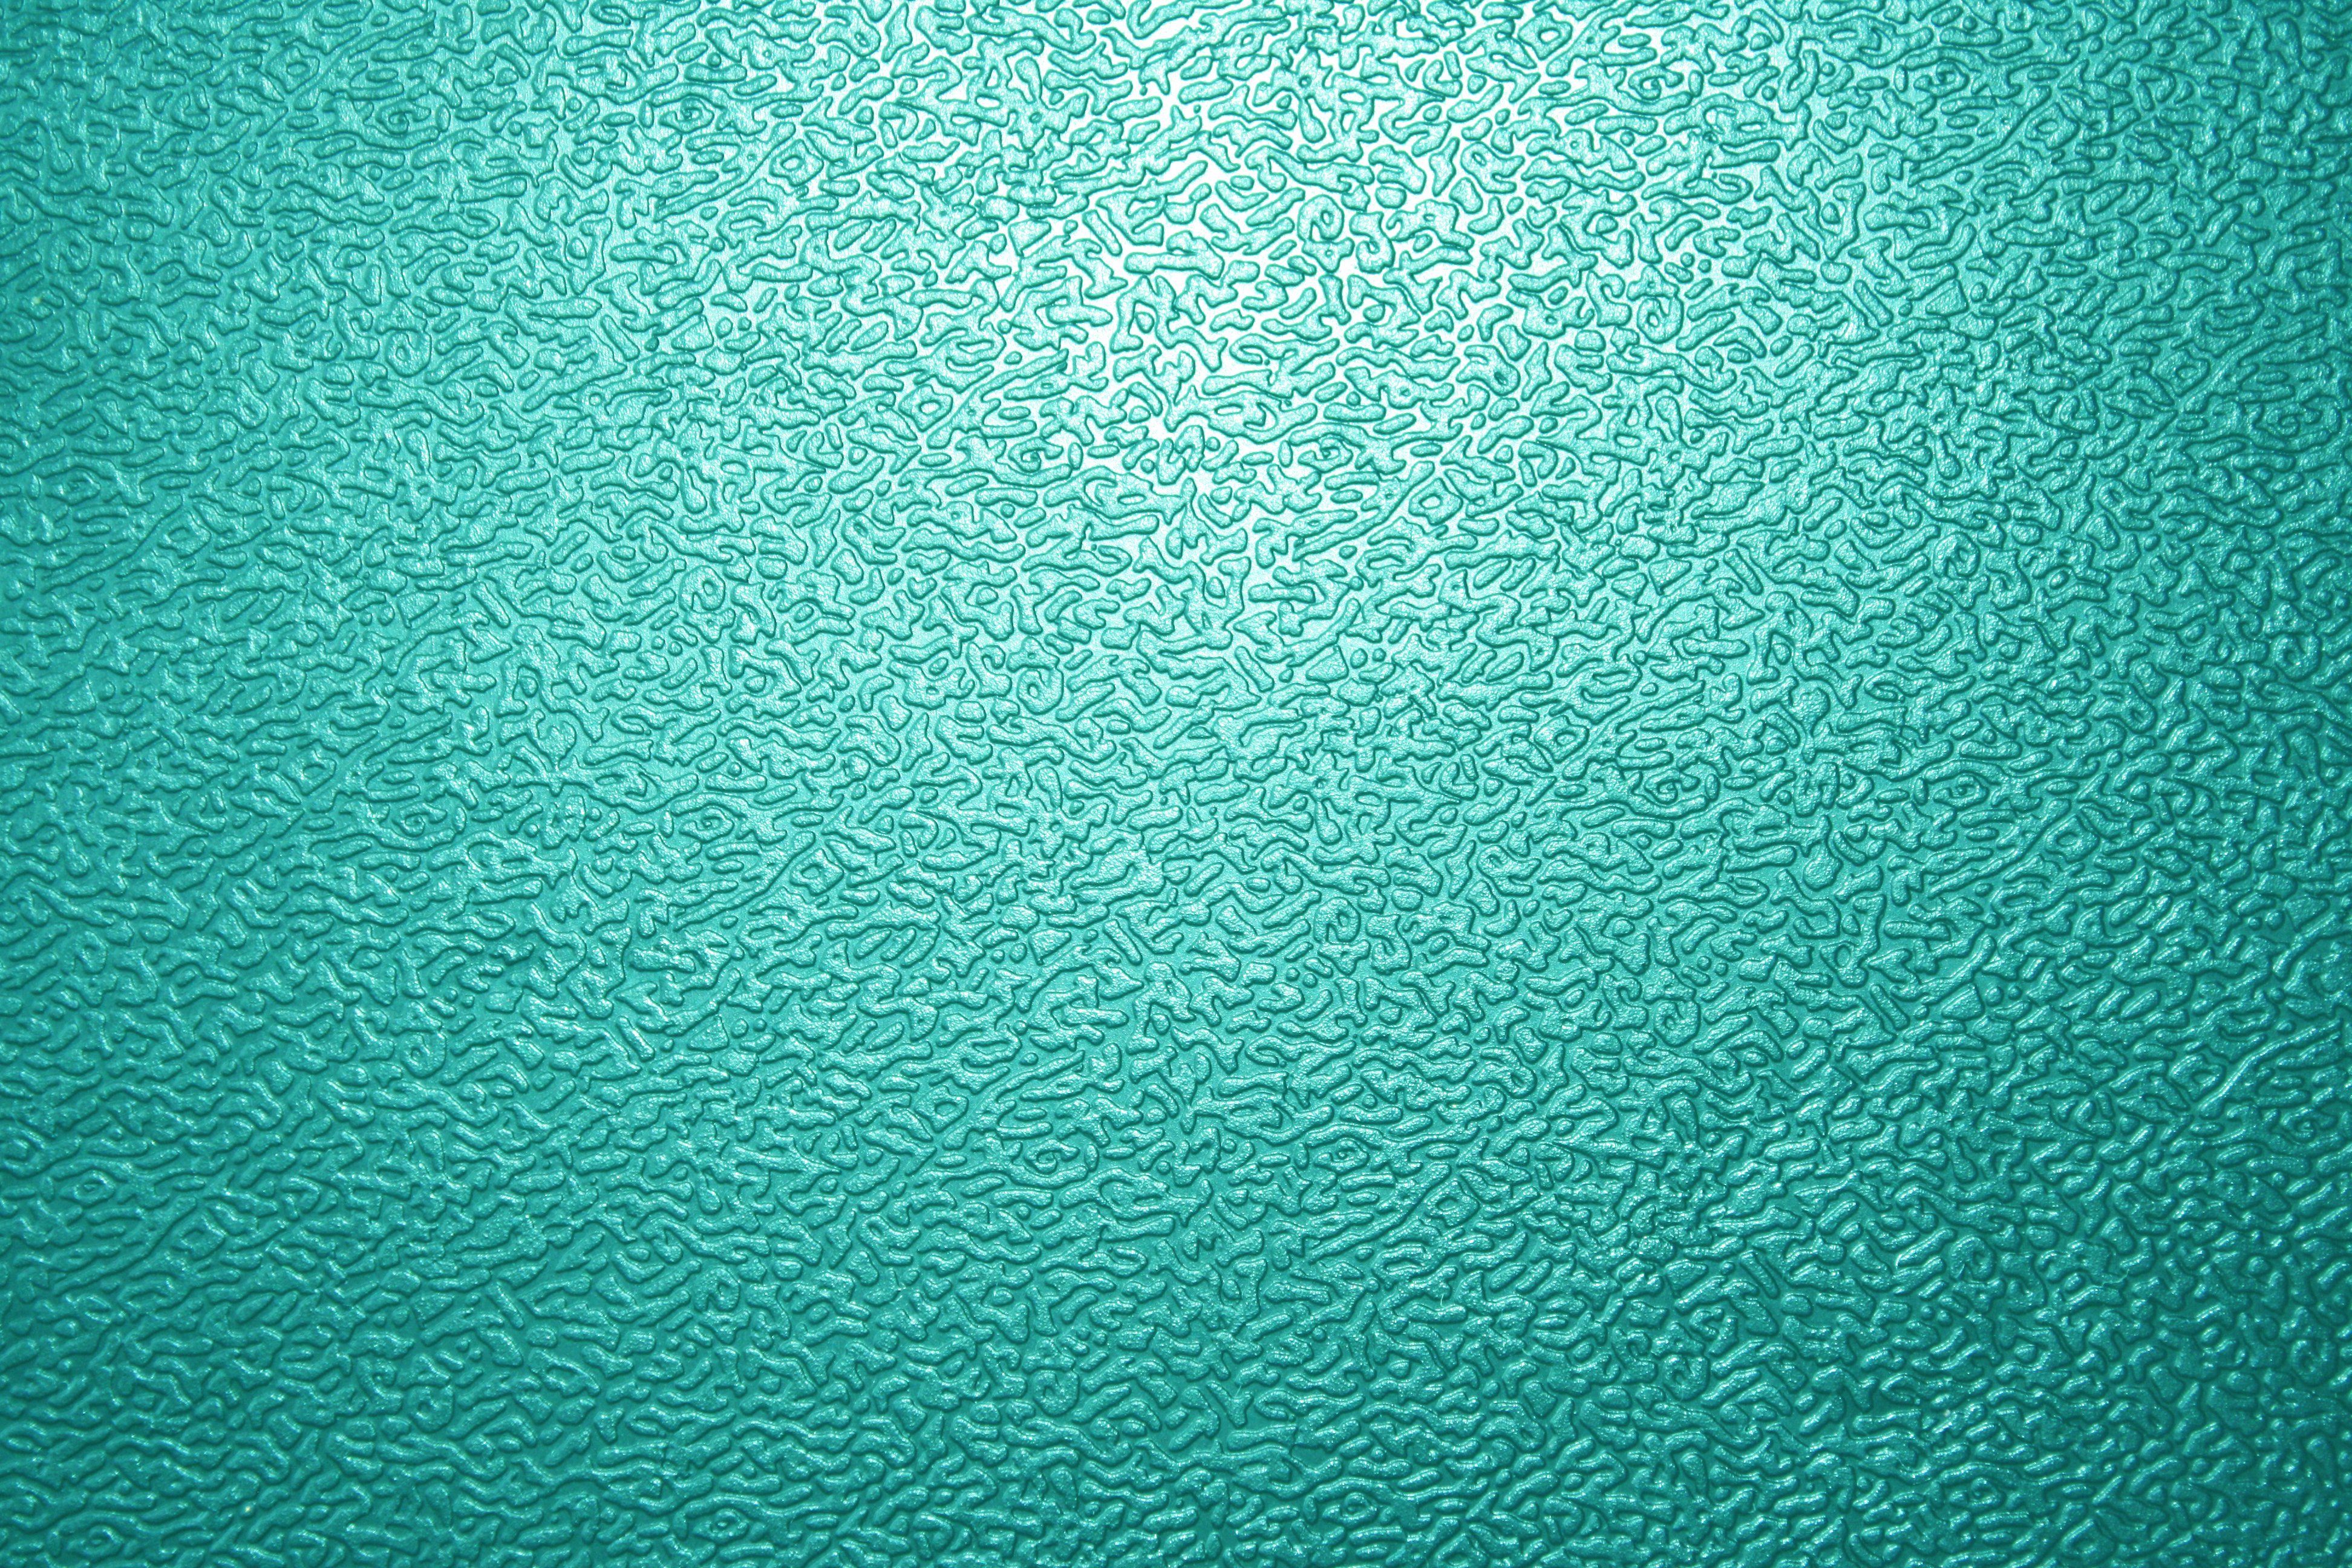  47 Teal Blue Wallpaper WallpaperSafari